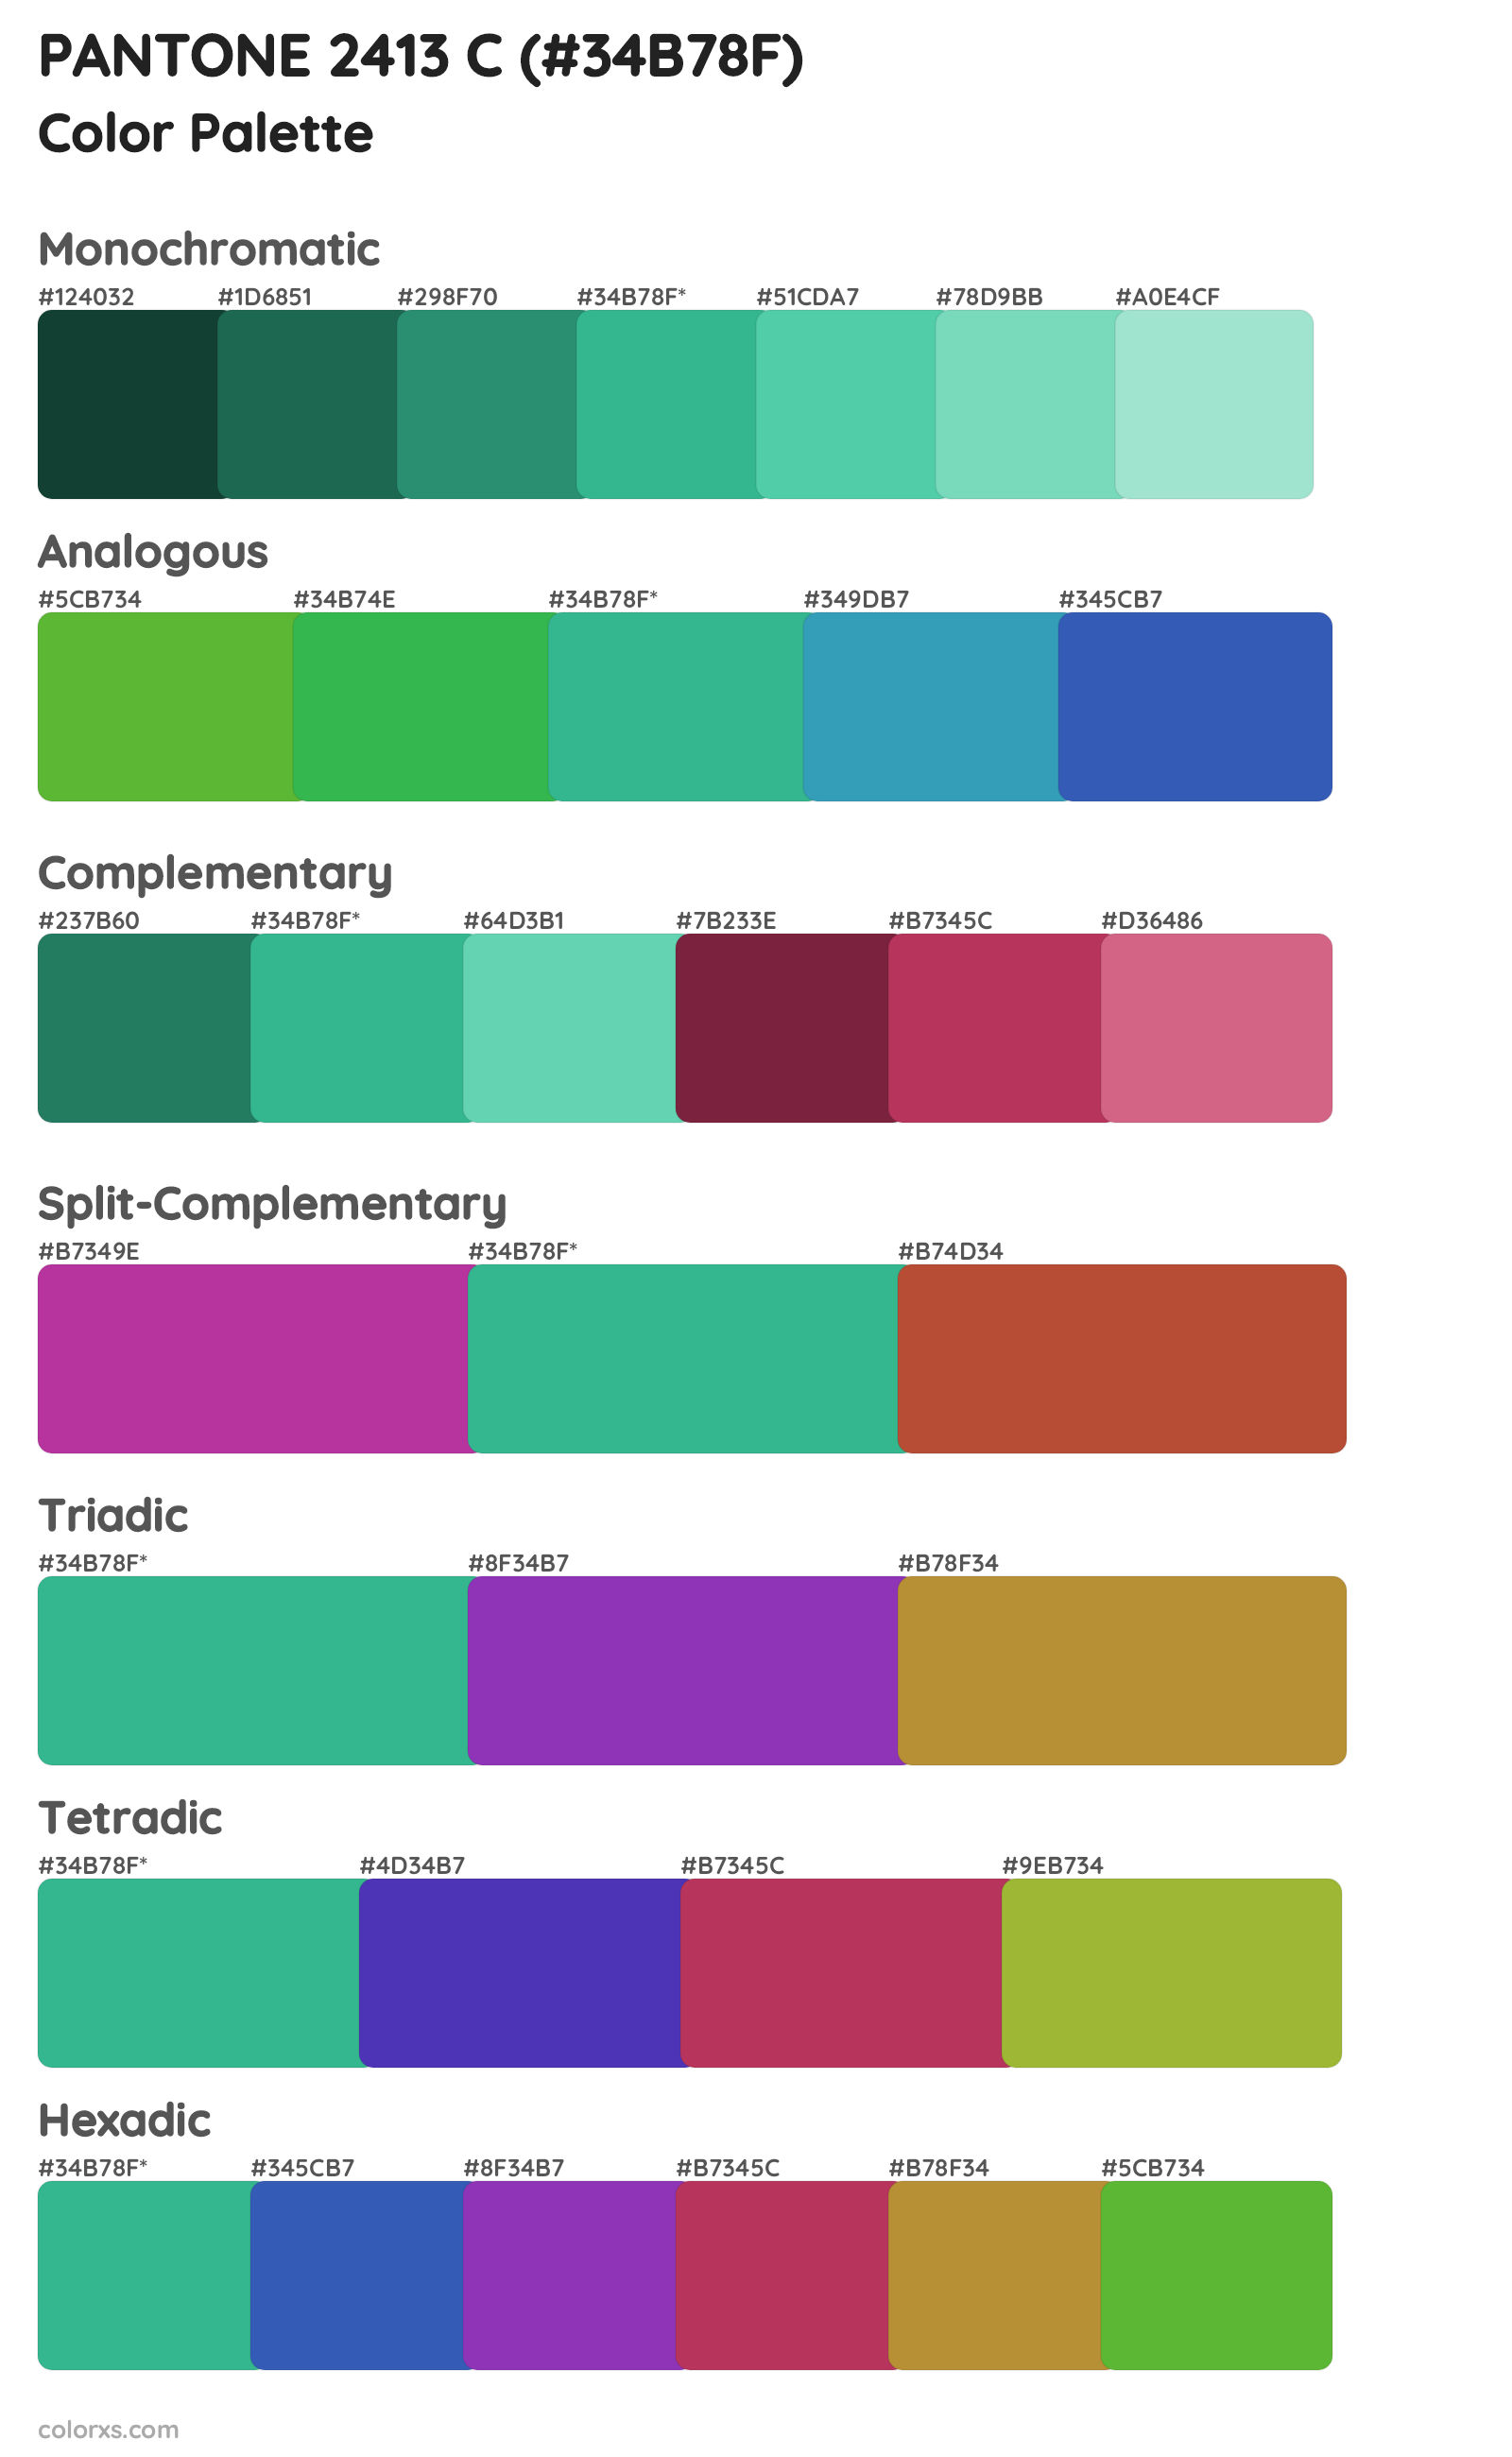 PANTONE 2413 C Color Scheme Palettes